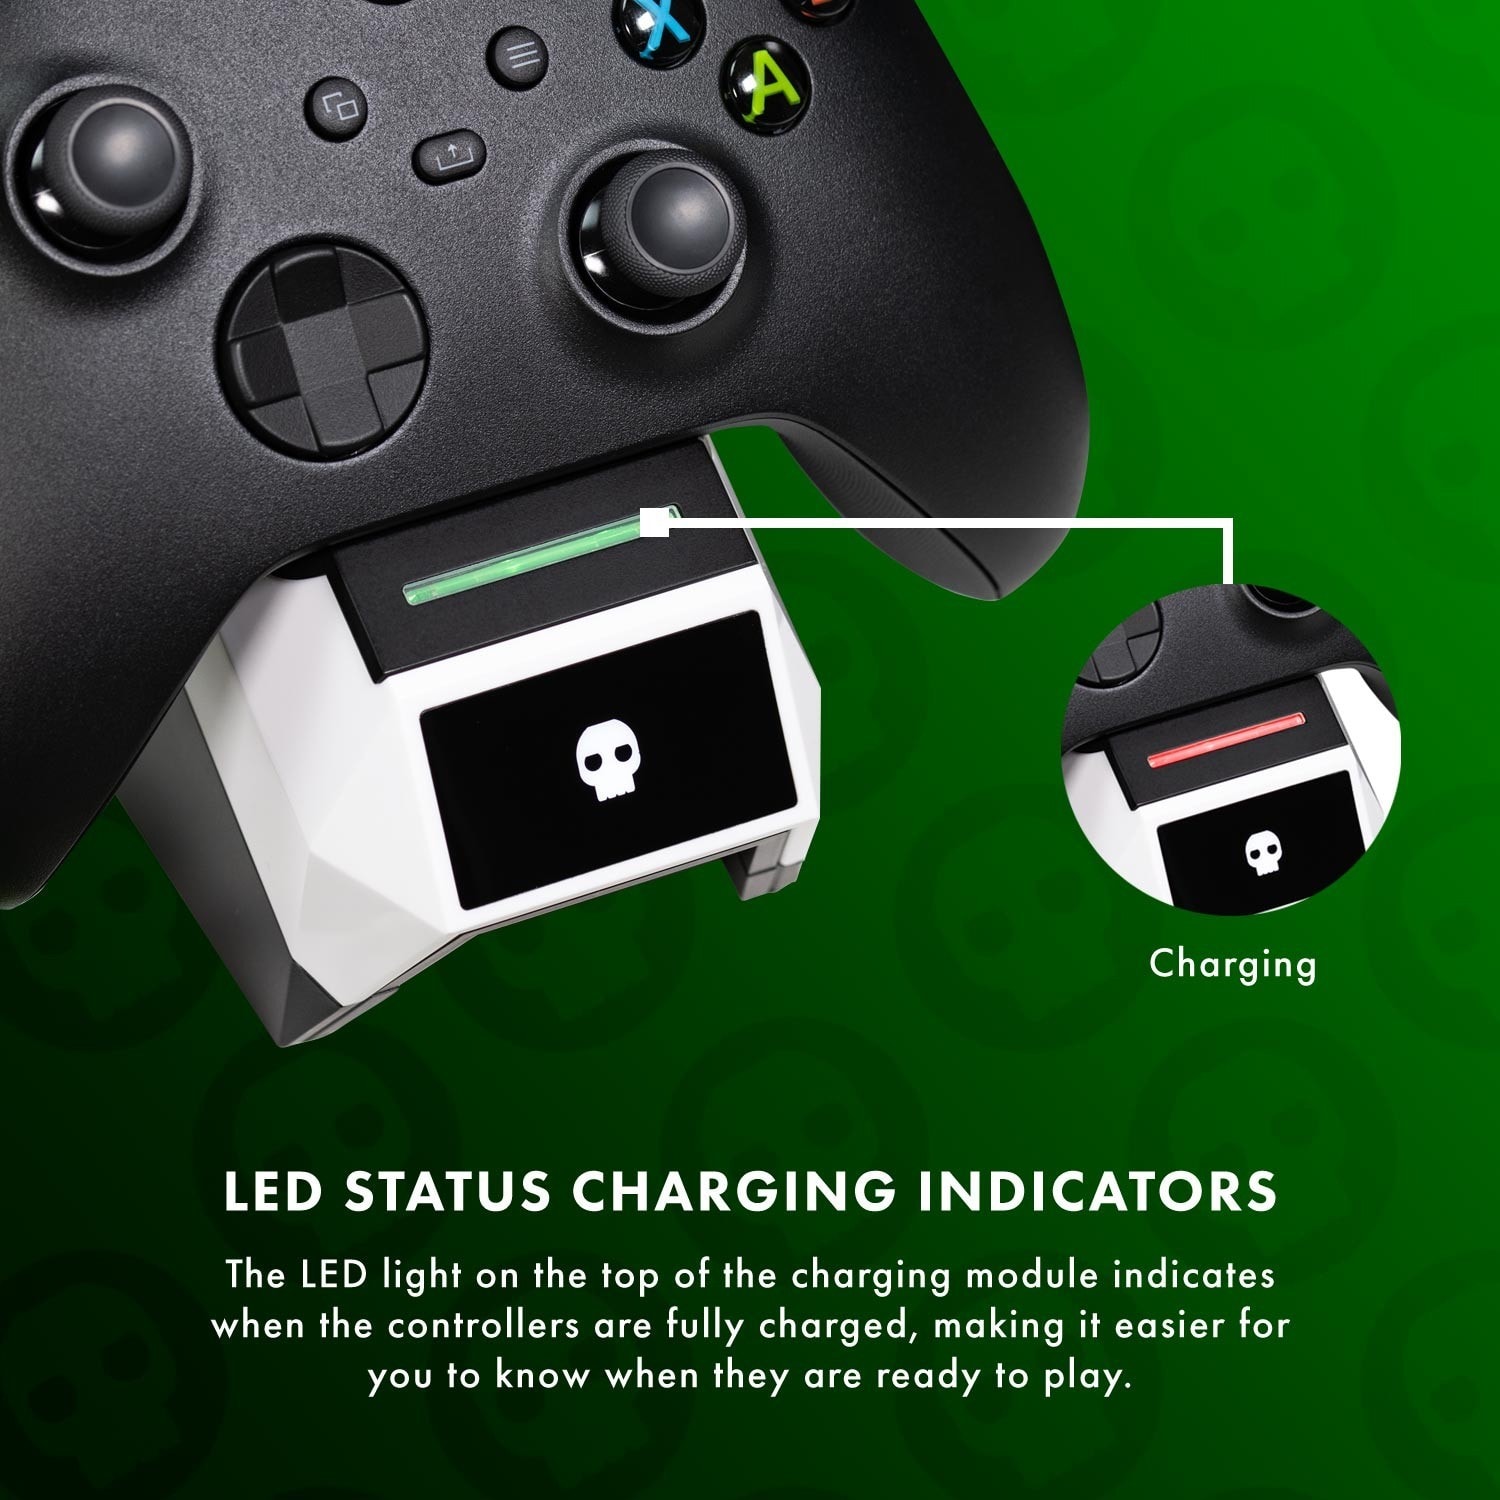 Test HyperX ChargePlay Duo : un double chargeur de manettes Xbox simple et  efficace - Les Numériques